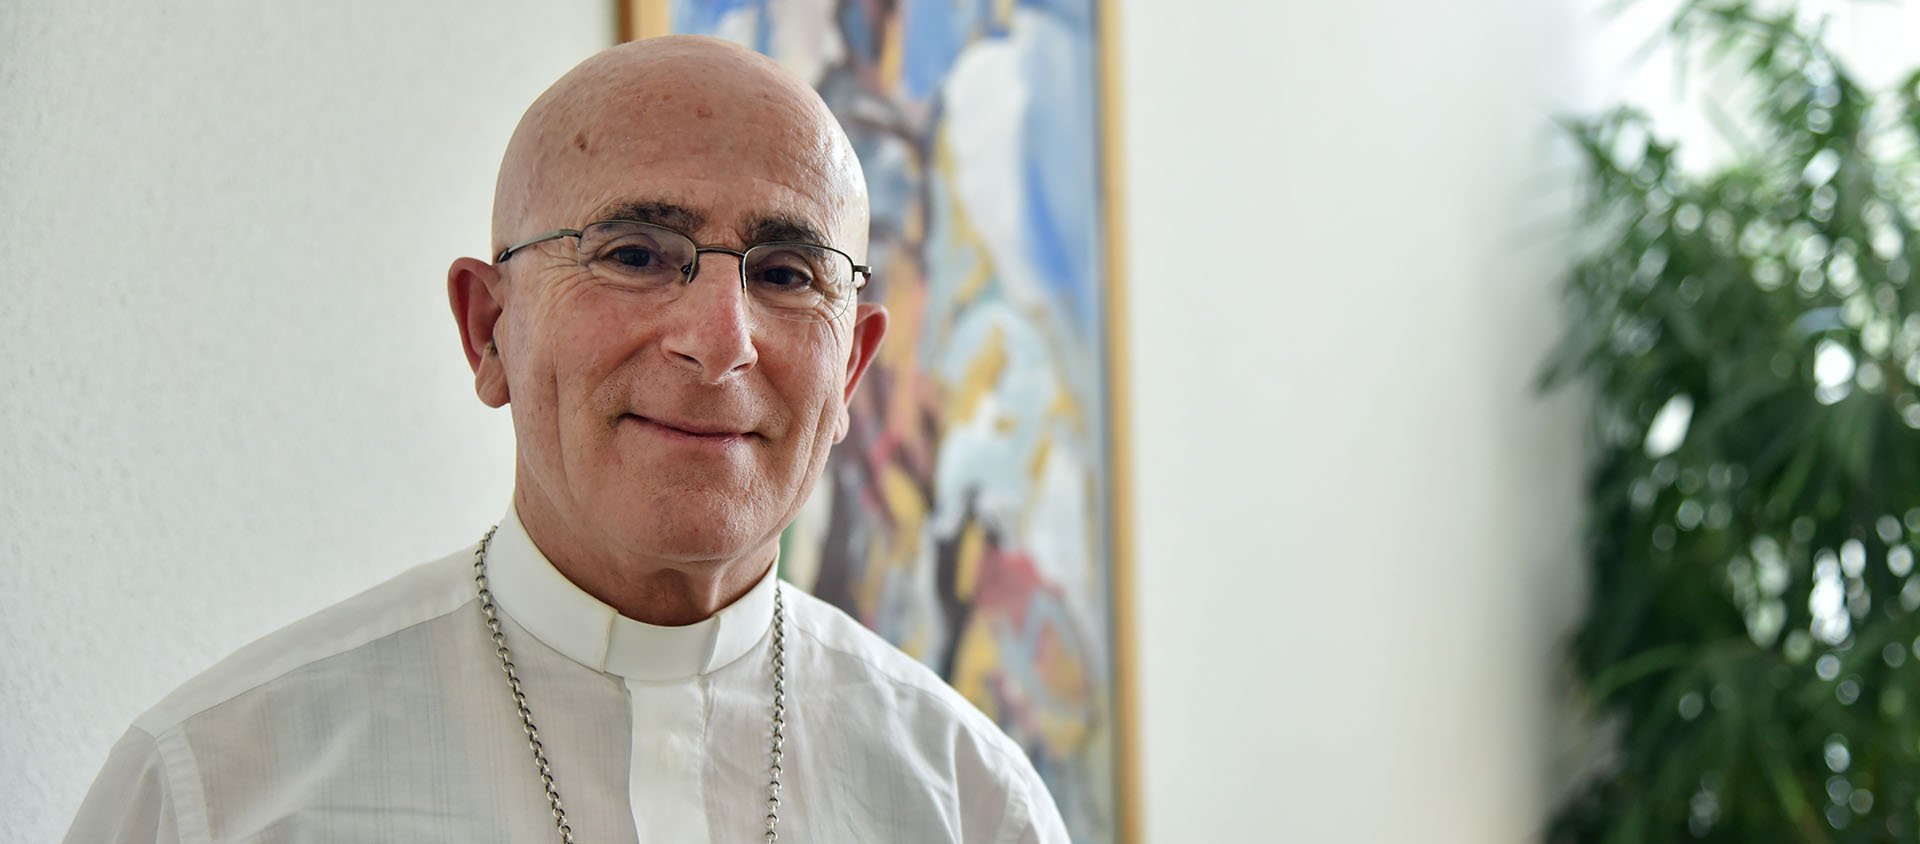 Mgr Joseph Bonnemain a été élu évêque de Coire en mars 2021 | © Raphaël Zbinden